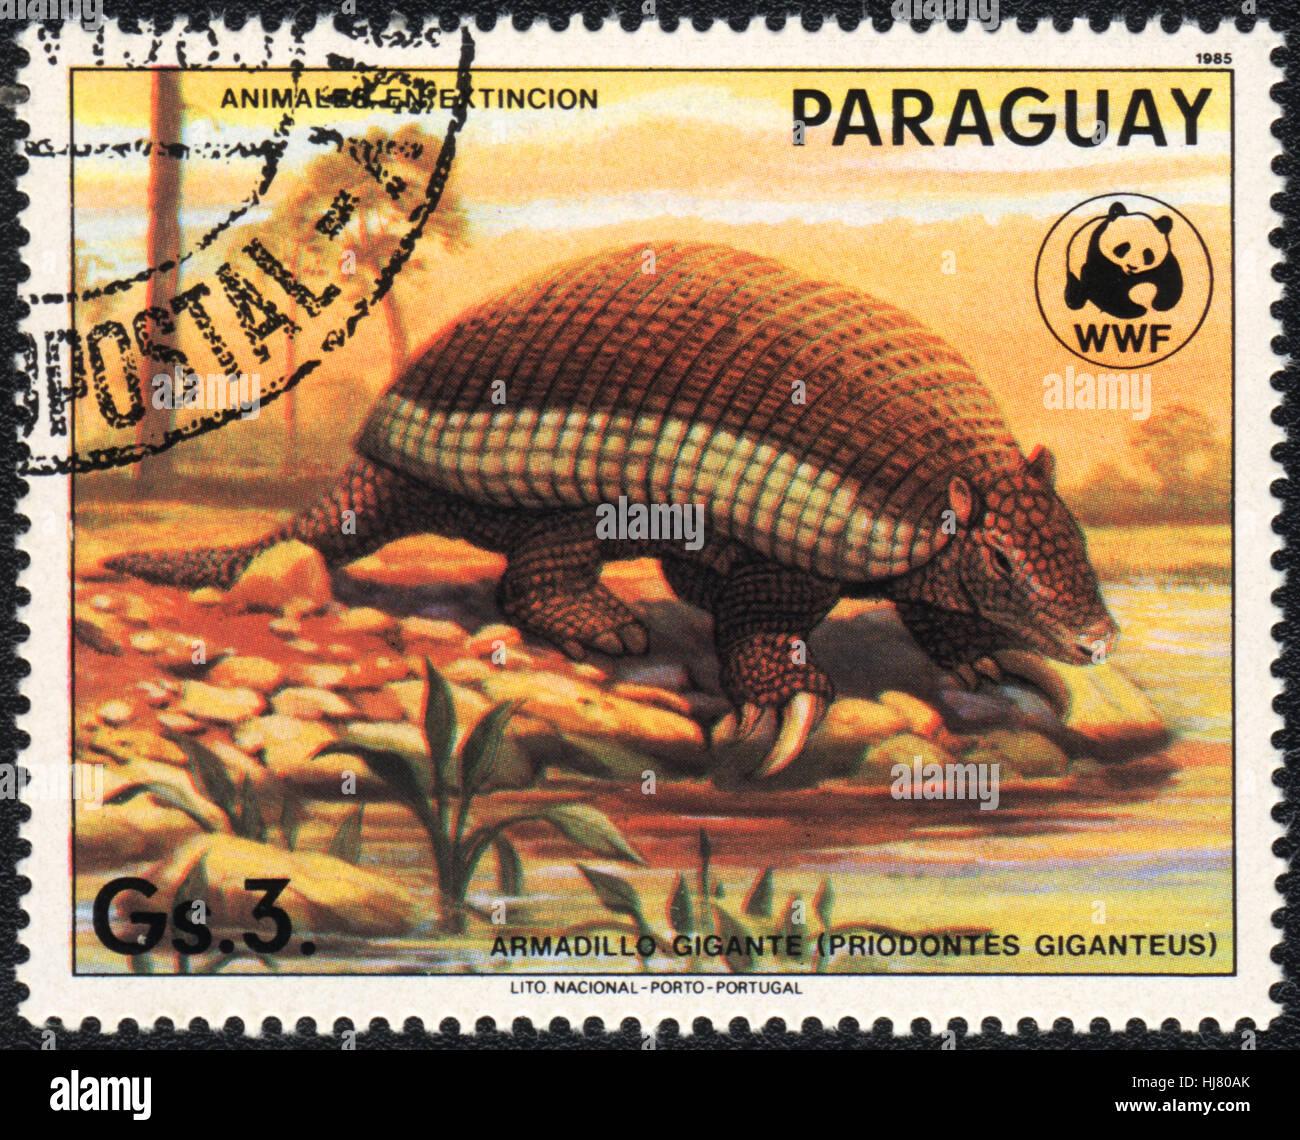 Un timbre-poste imprimé en Paraguay montre un tatou géant (Priodontes giganteus), série 1985 Banque D'Images